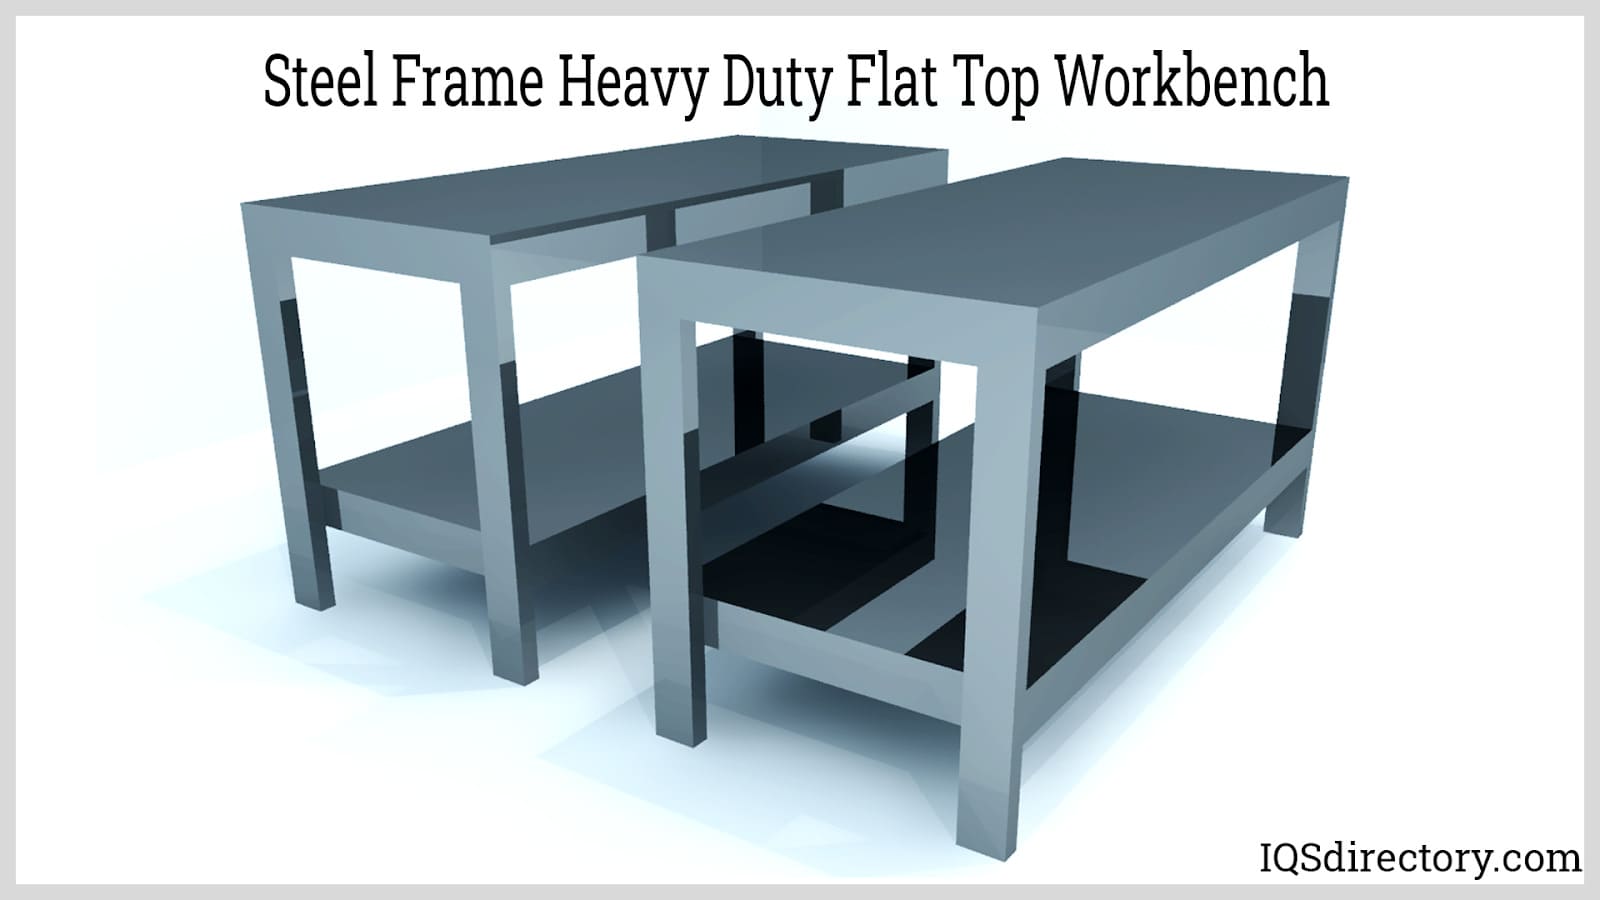 Steel Frame Heavy Duty Flat Top Workbench